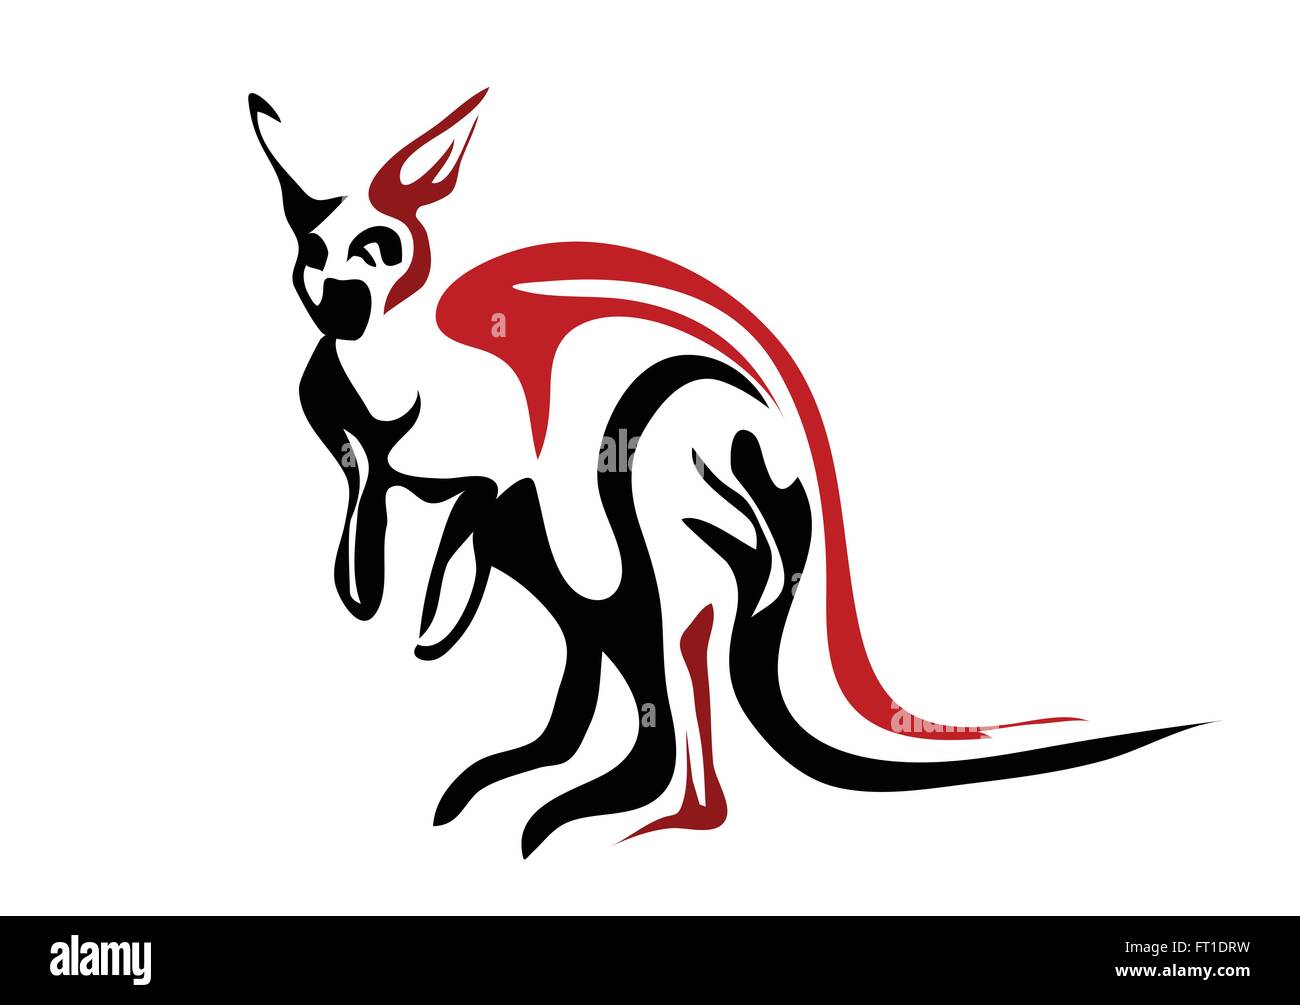 Hình ảnh đen trắng của con đội bóng kangaroo bó sát bầu trời xanh là điều rất đẹp. Hãy xem hình ảnh của chúng tôi về hình bóng kangaroo để cảm nhận được sức mạnh và sự tự tin của chúng.